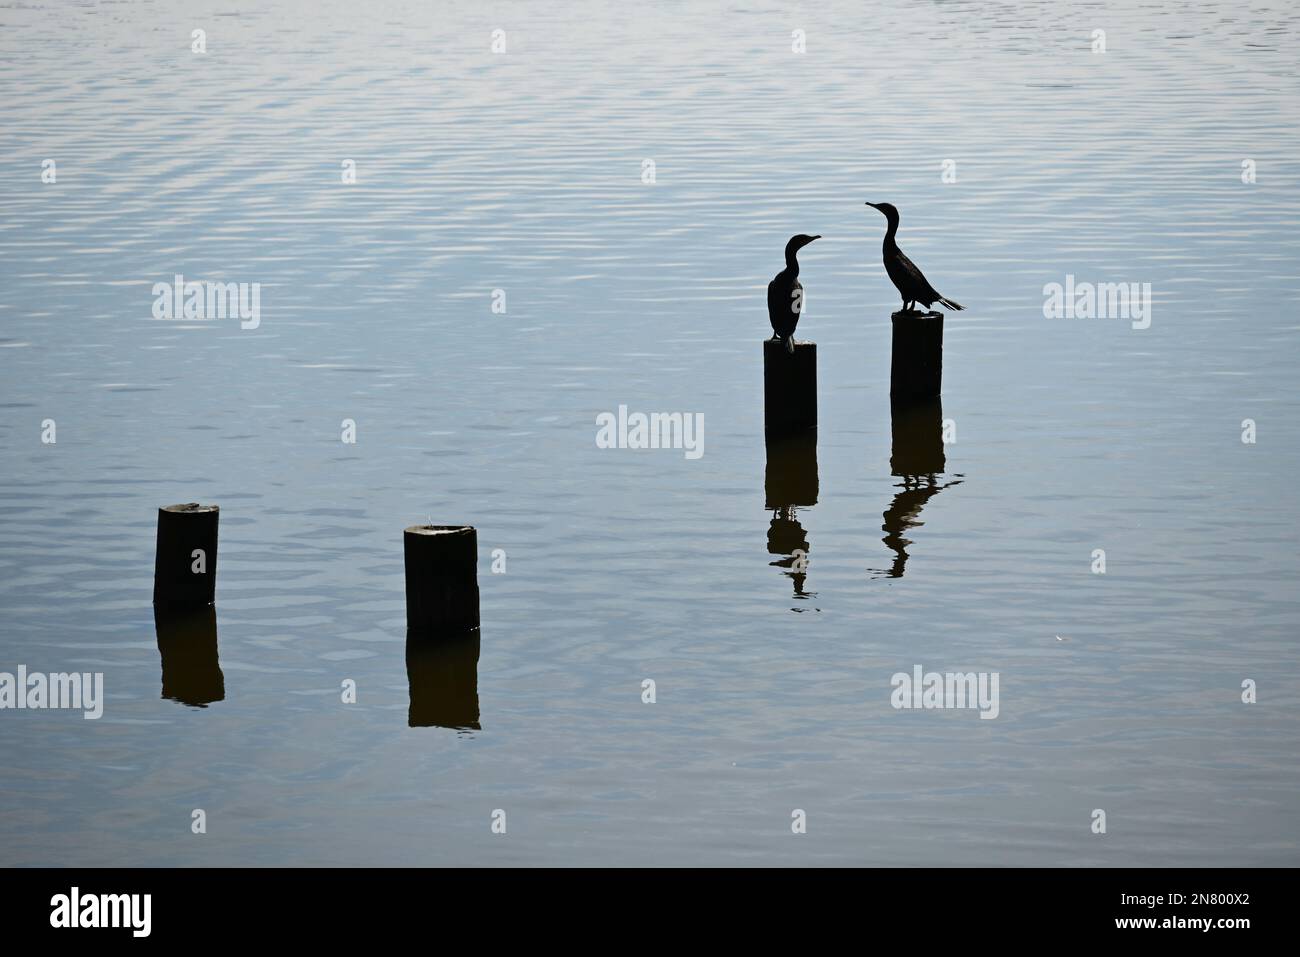 El sol silueta dos pájaros cormoranes en pilotes en un lago. Foto de stock